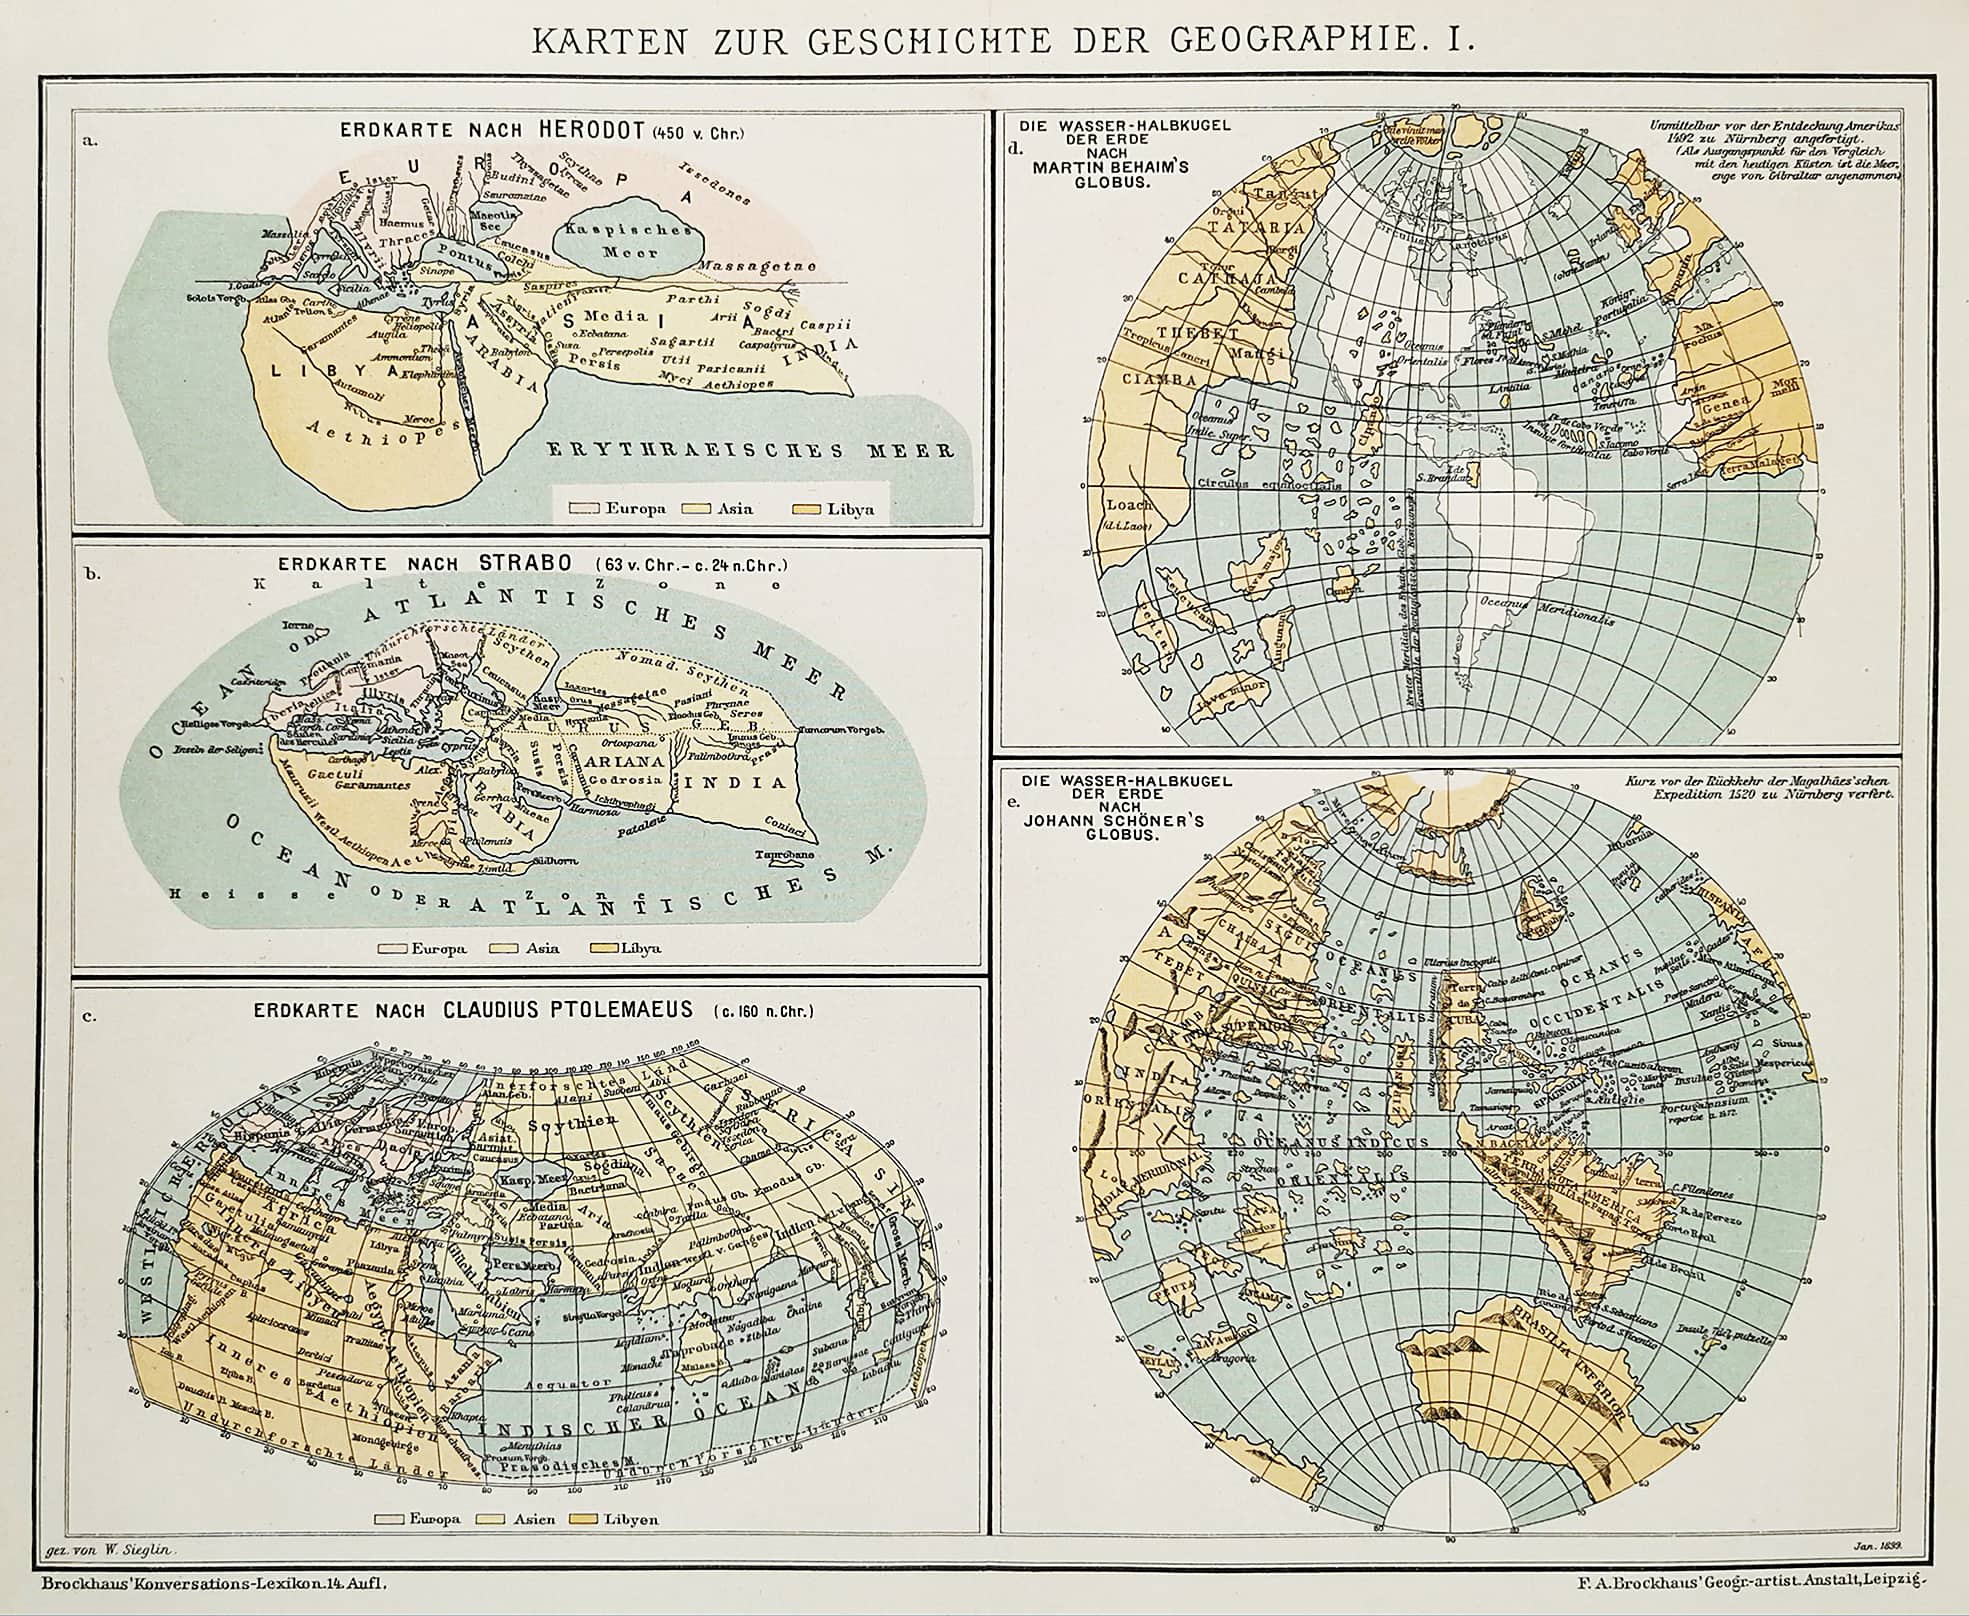 Karten zur Geschichte der Geograpie. I. - Antique Map from 1895